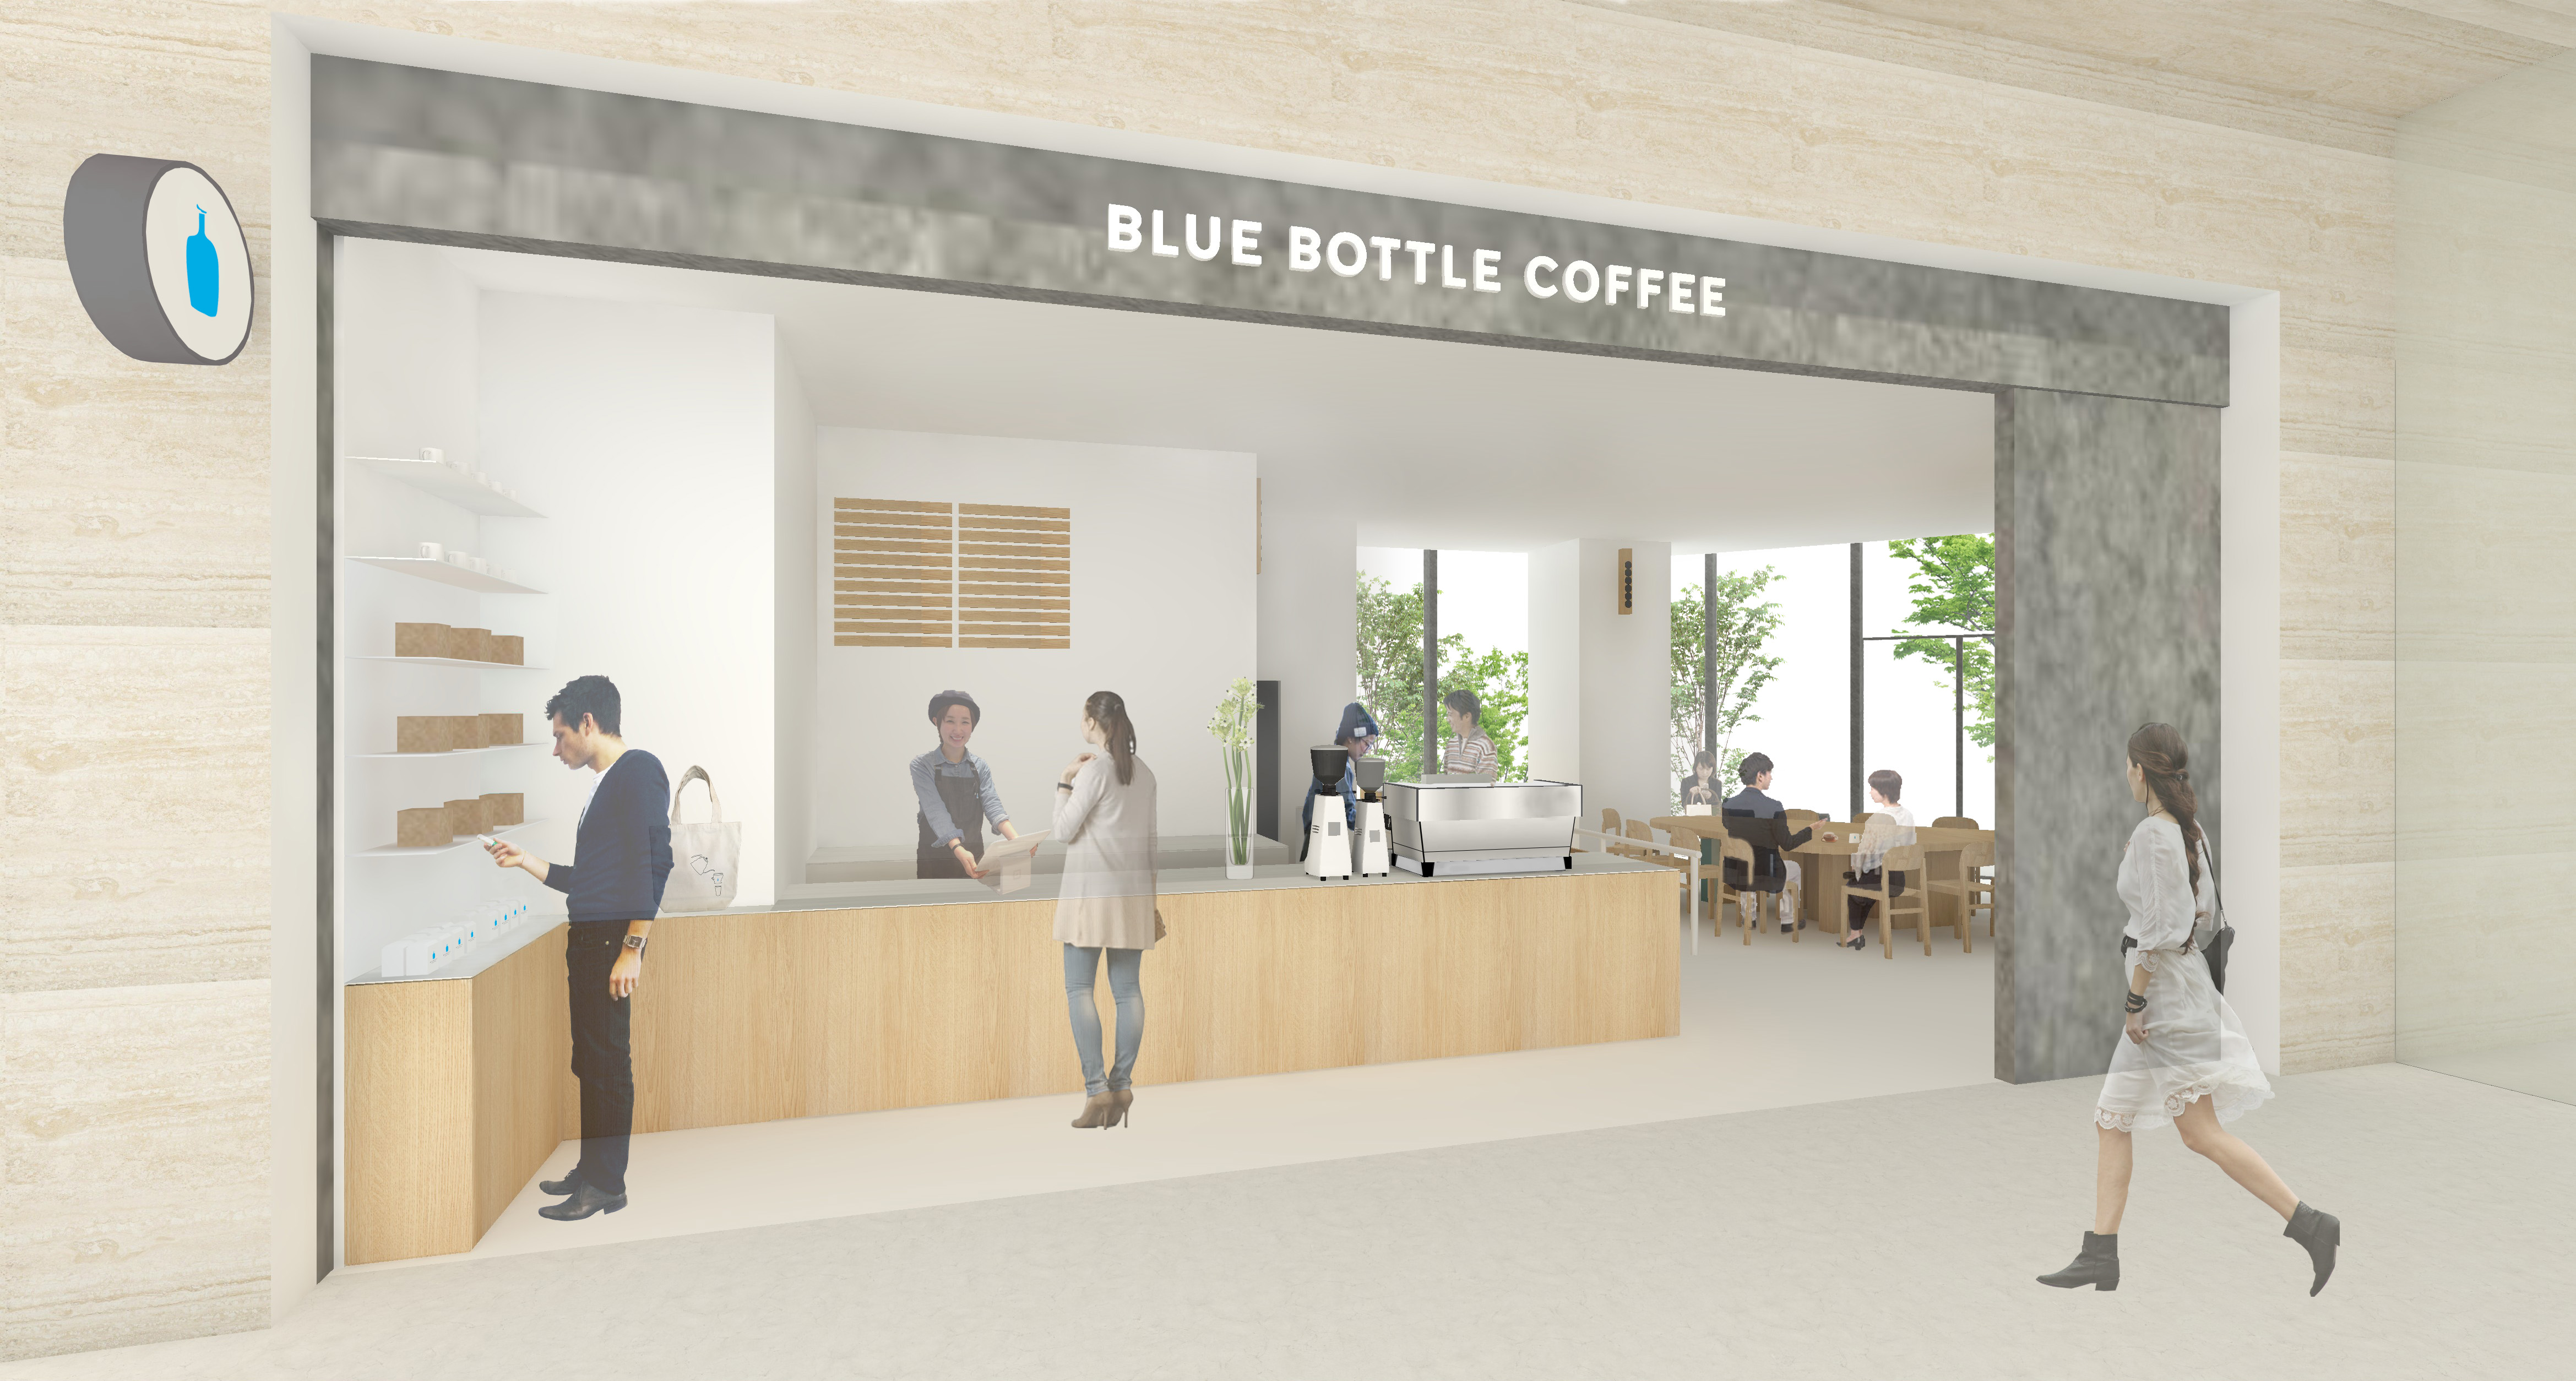 ブルーボトルコーヒー 竹芝カフェ 9月14 月 グランドオープン Blue Bottle Coffee Japan合同会社のプレスリリース